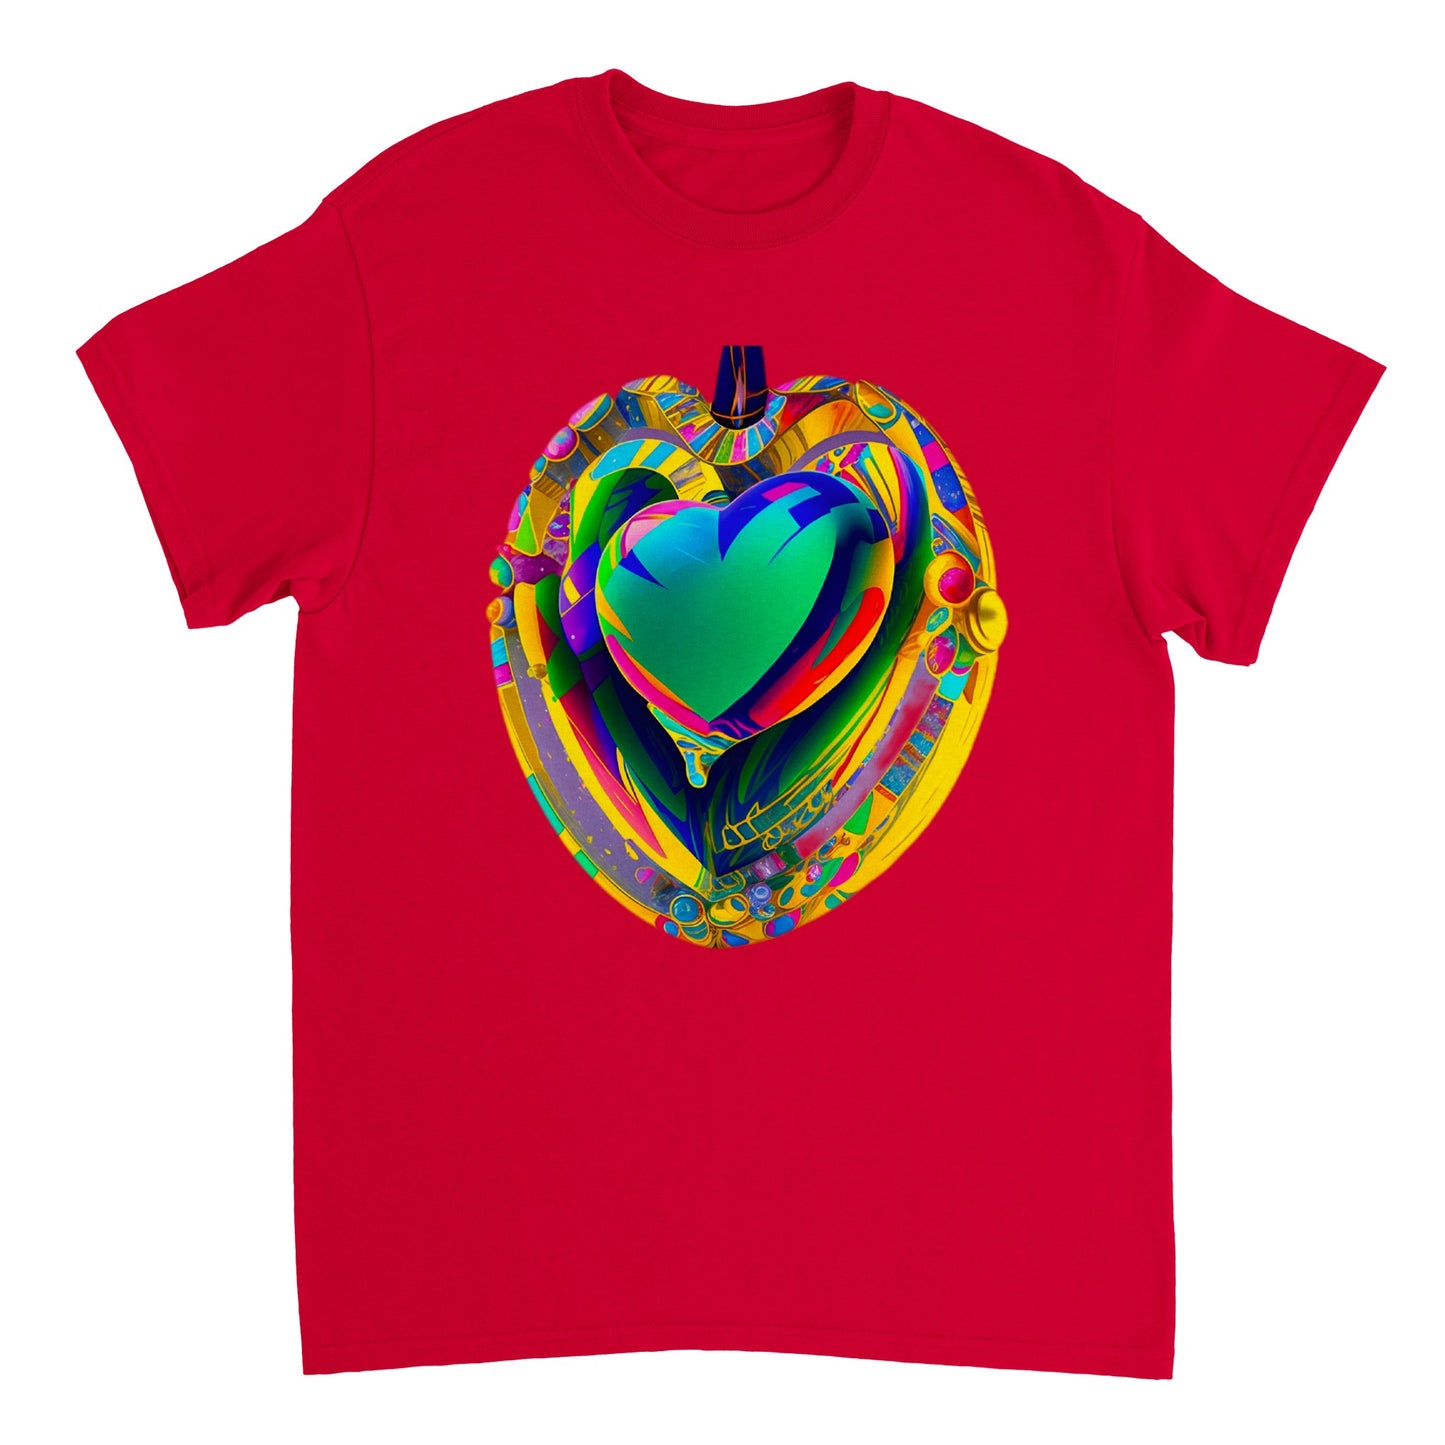 Love Heart - Heavyweight Unisex Crewneck T-shirt 77